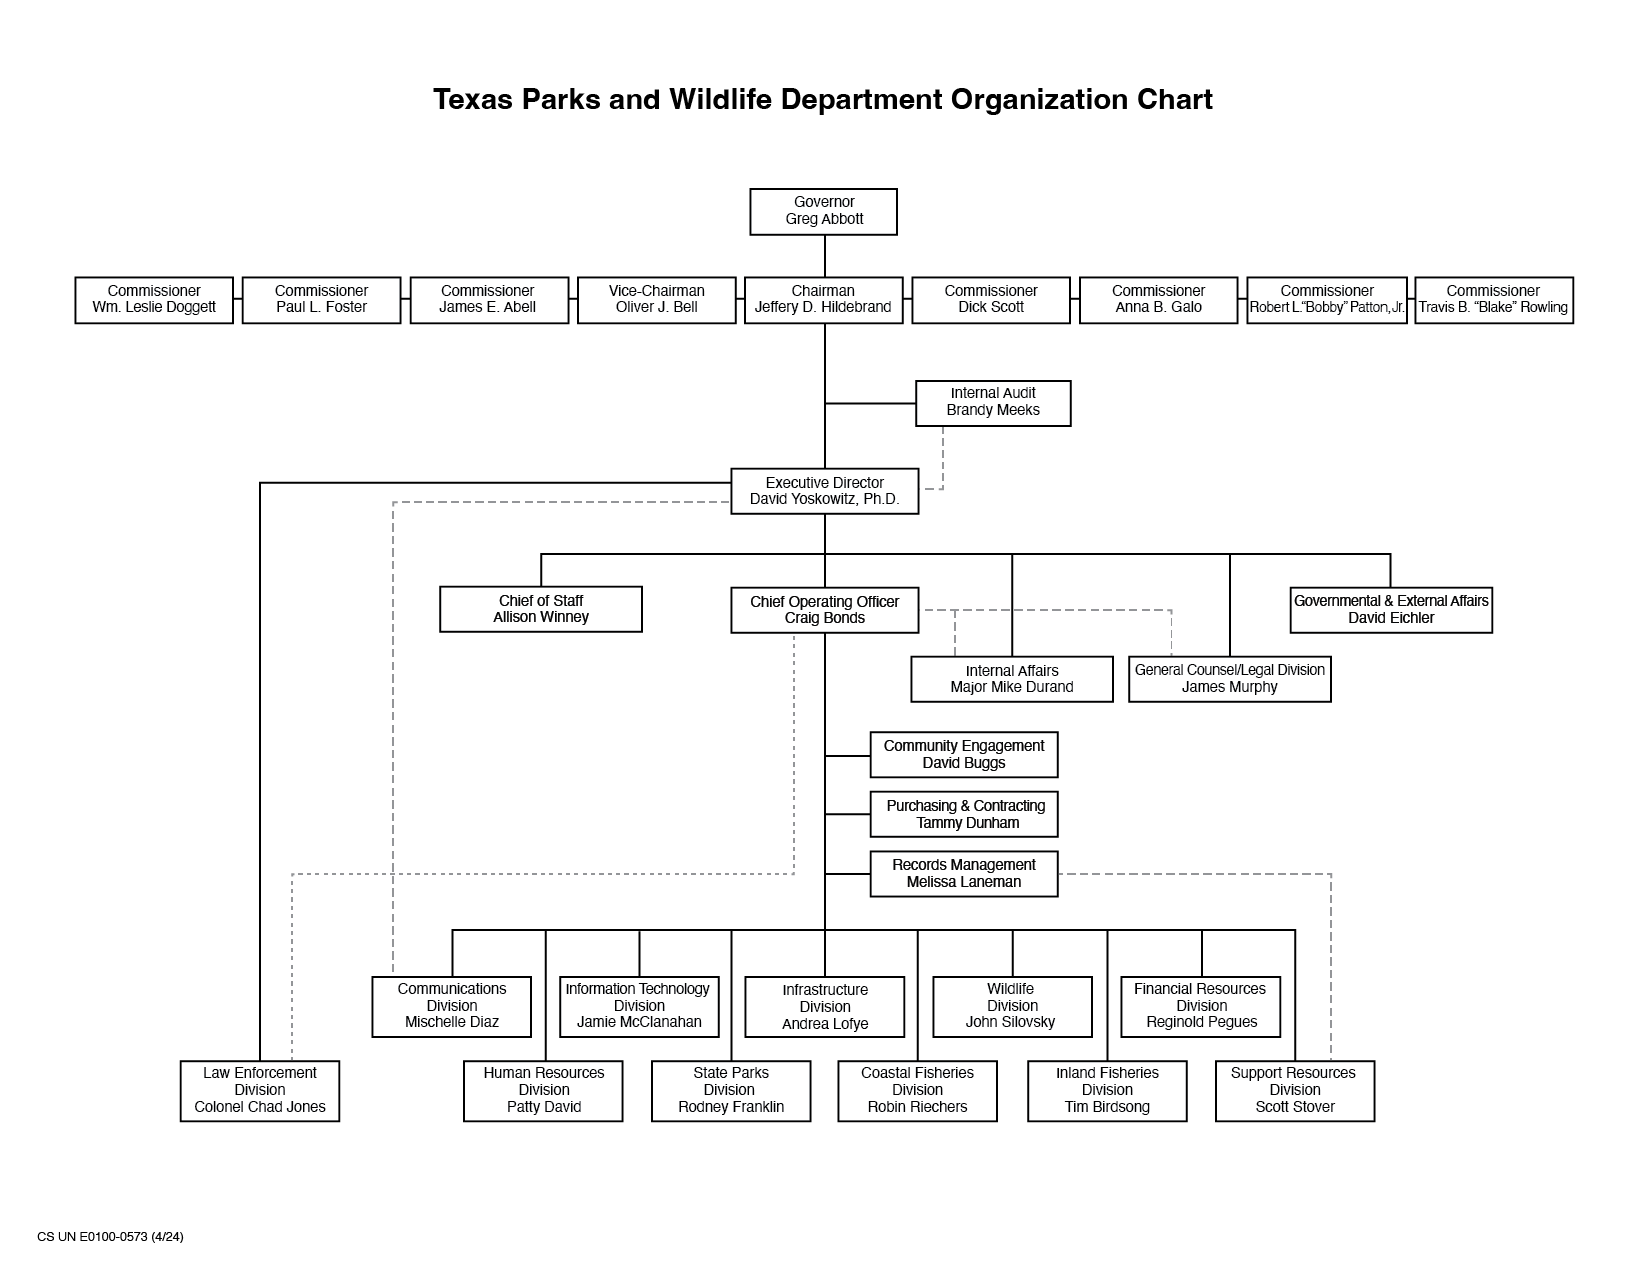 TPWD Organization Chart